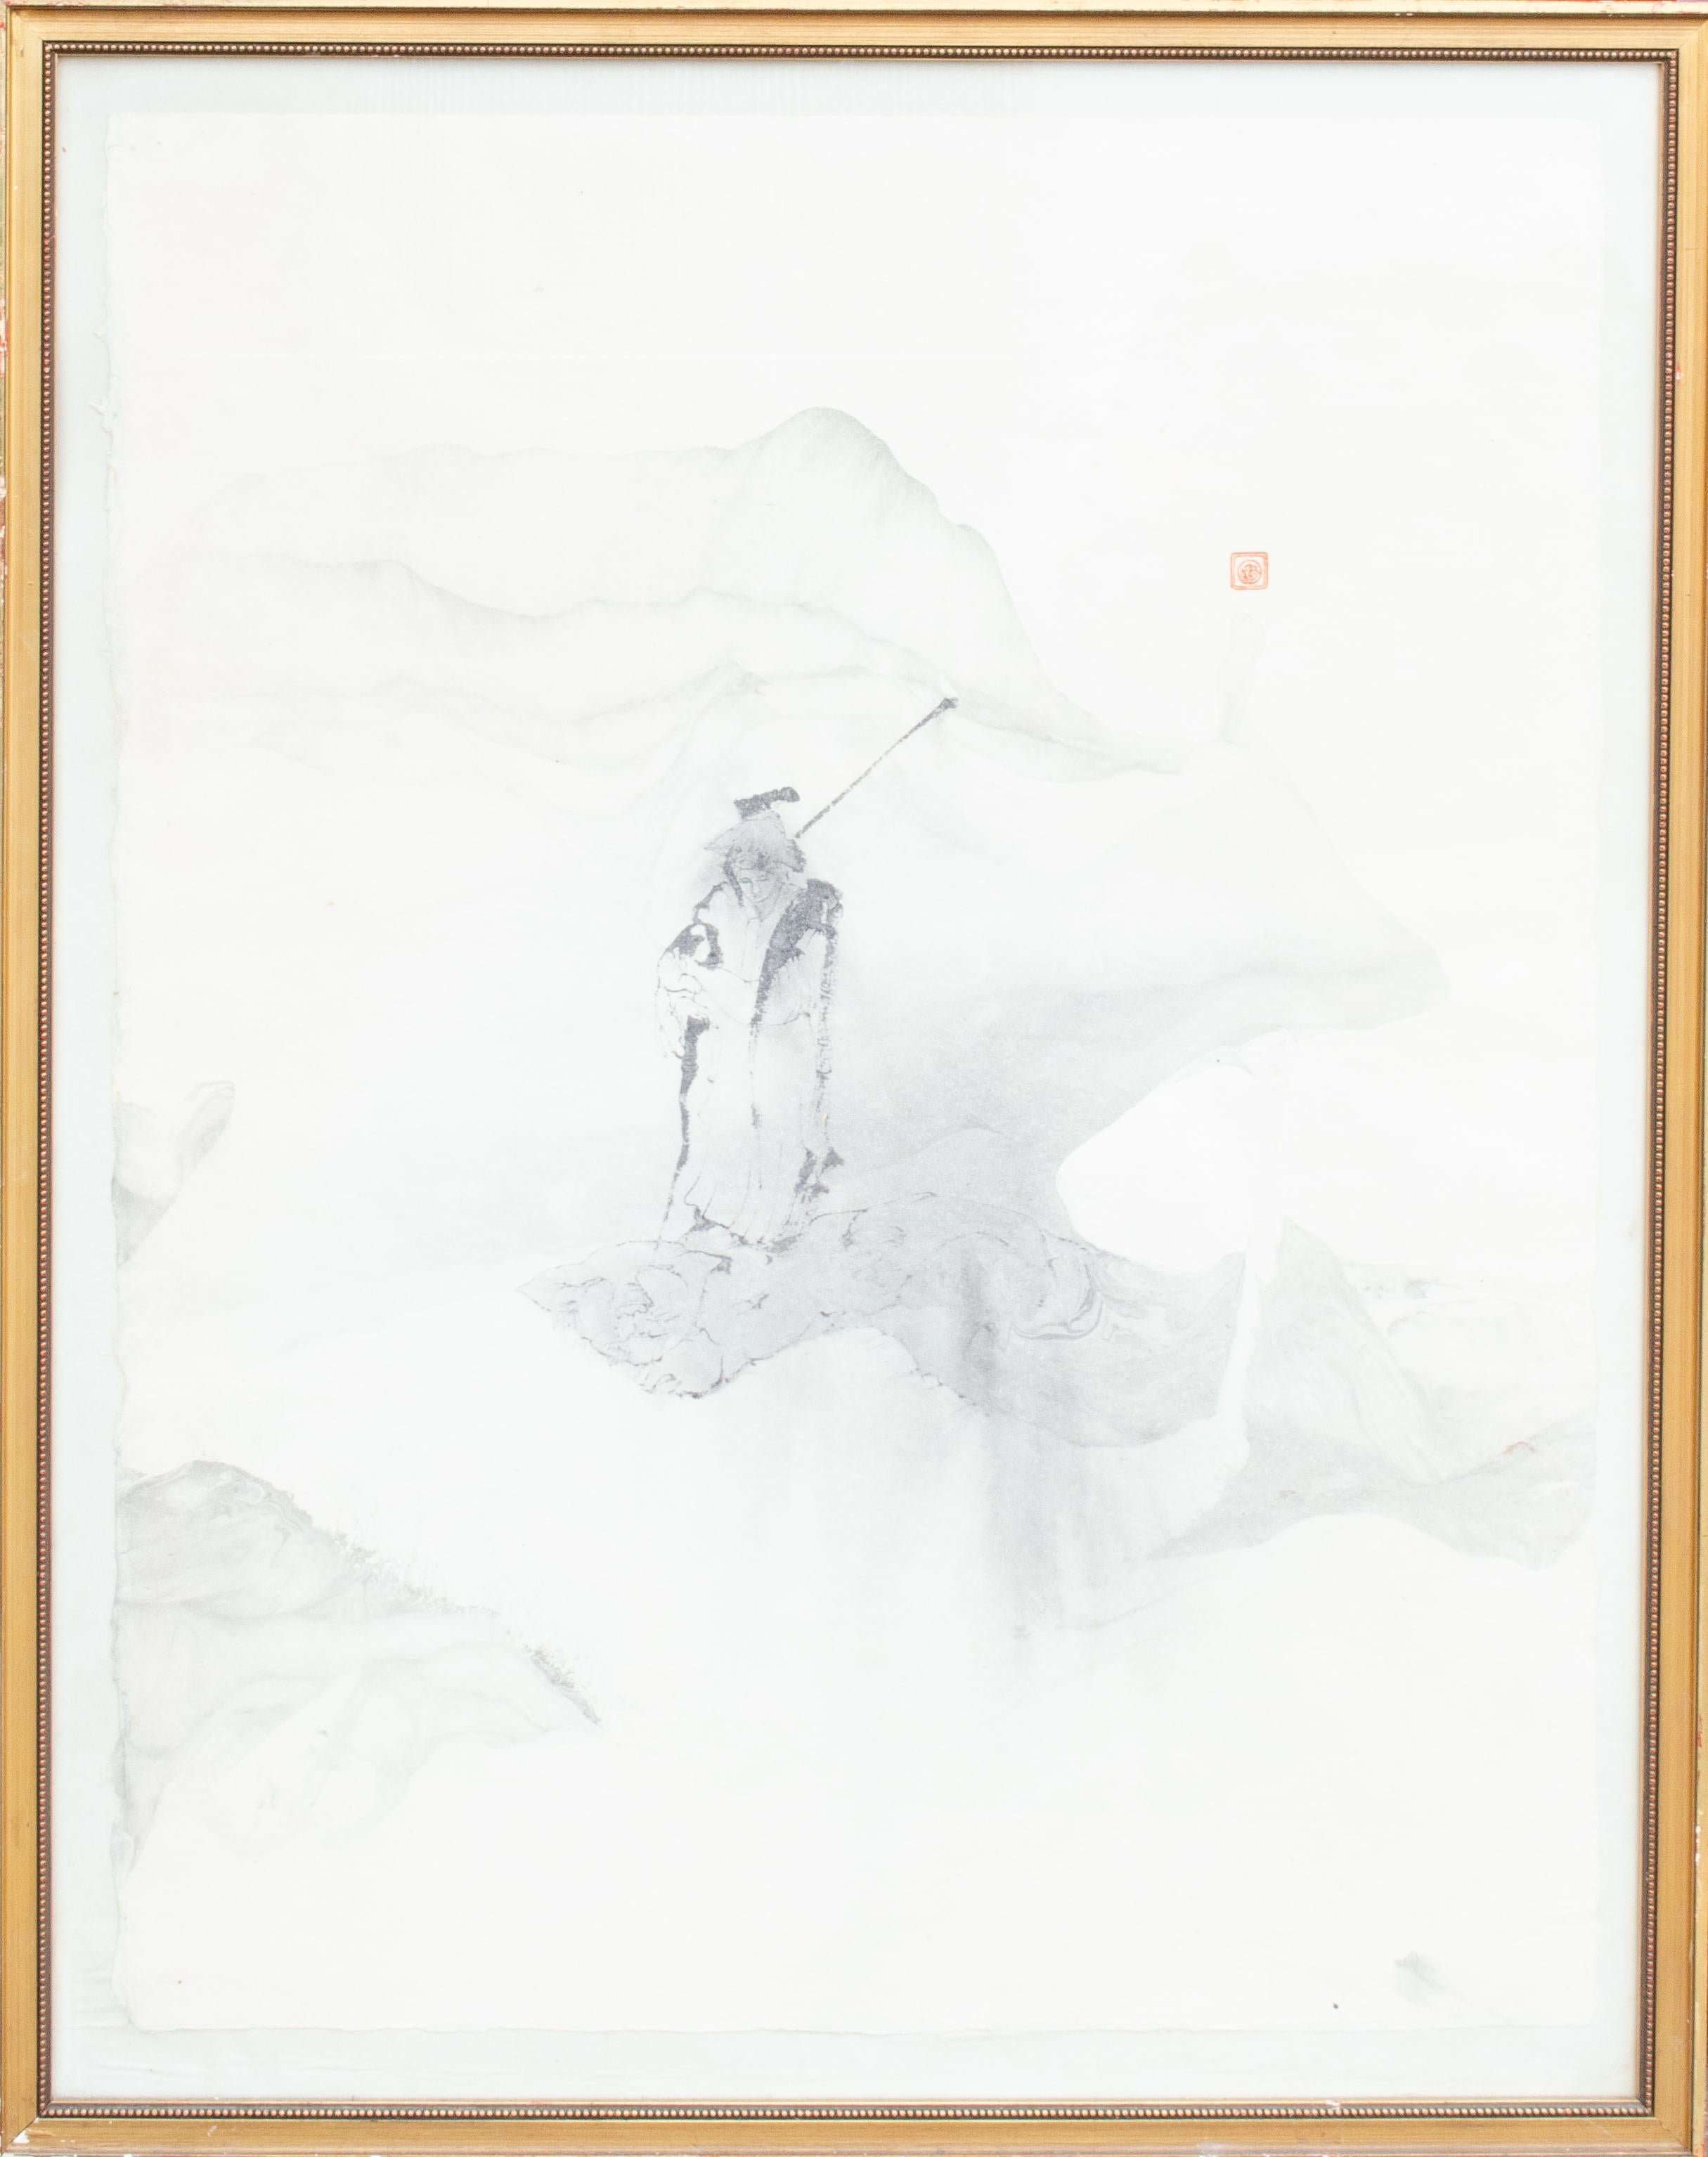 Unknown Landscape Art – Japanisches Pinselgemälde des Mystery-Künstlers